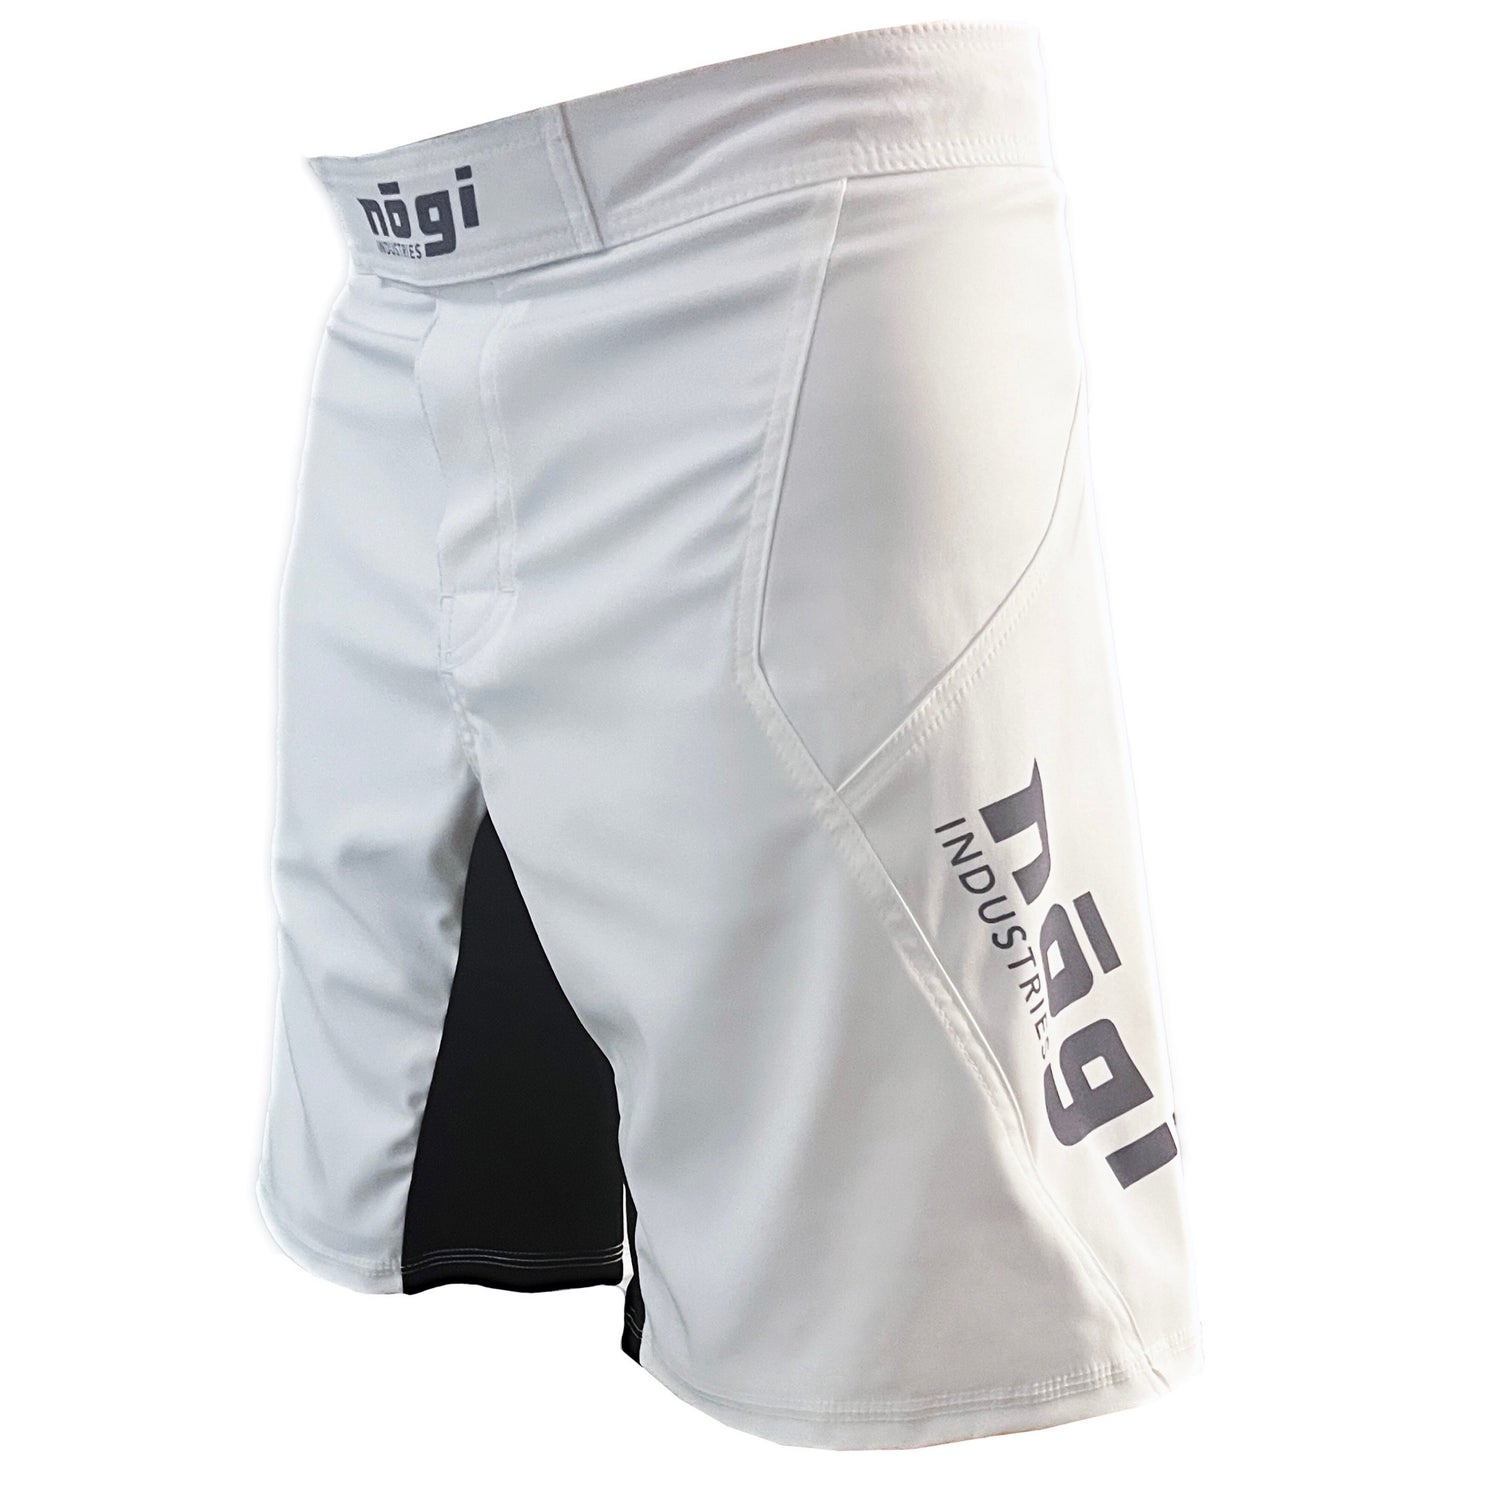 Pantalones cortos de lucha Phantom 4.0 - Blanco ártico y gris - HECHO EN EE. UU. 